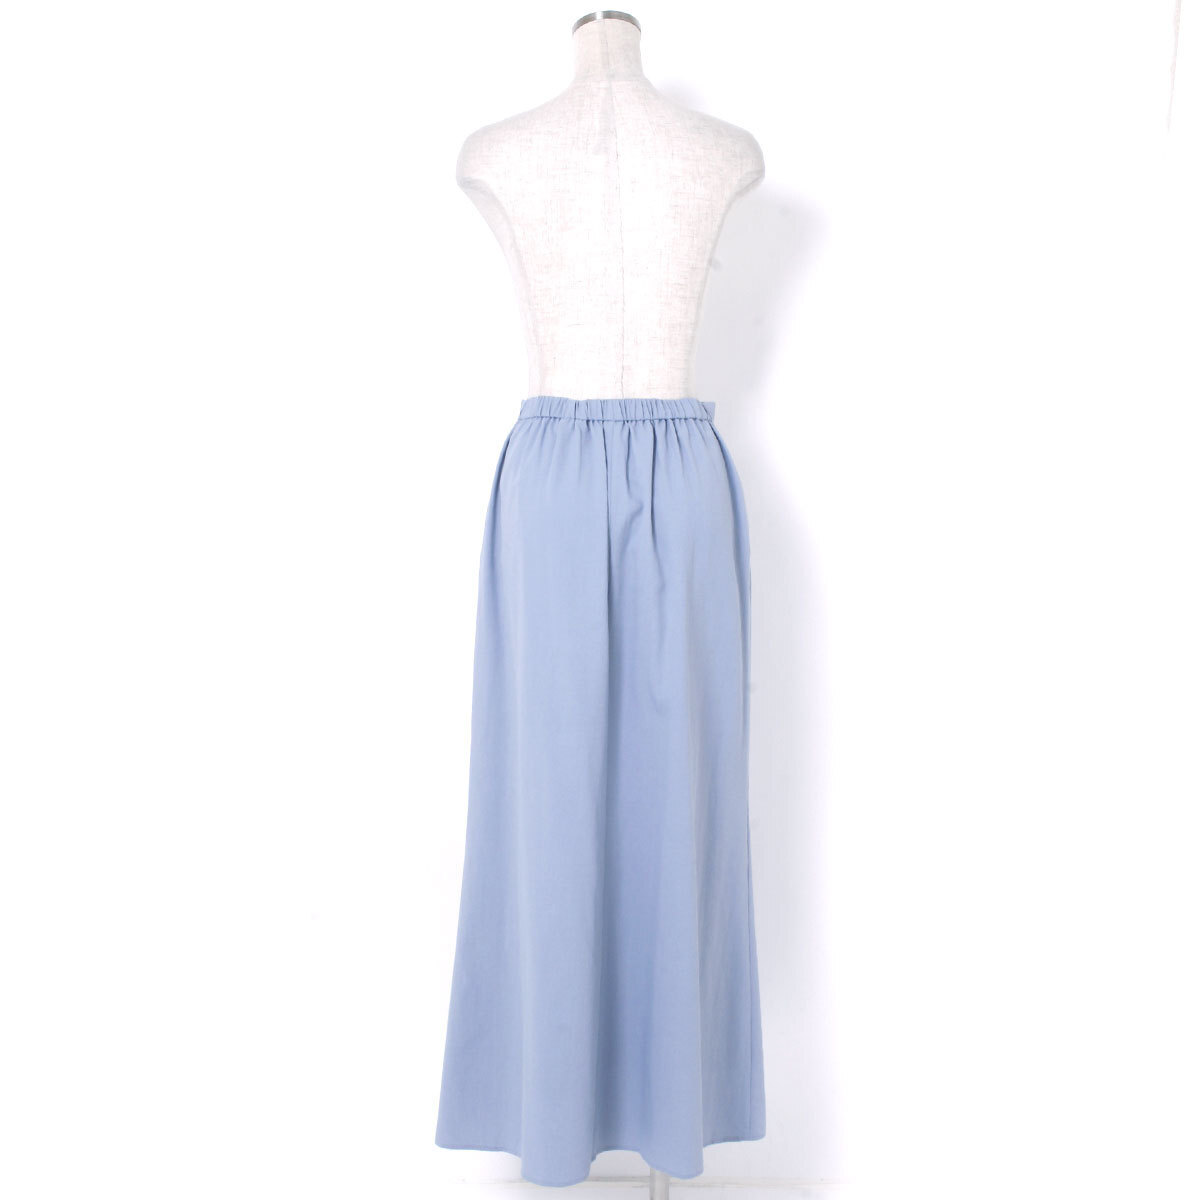 ELENDEEK SOFT MERMAID SK ソフトマーメードスカート 定価18,480円 size02 アイスブルー エレンディーク_画像7